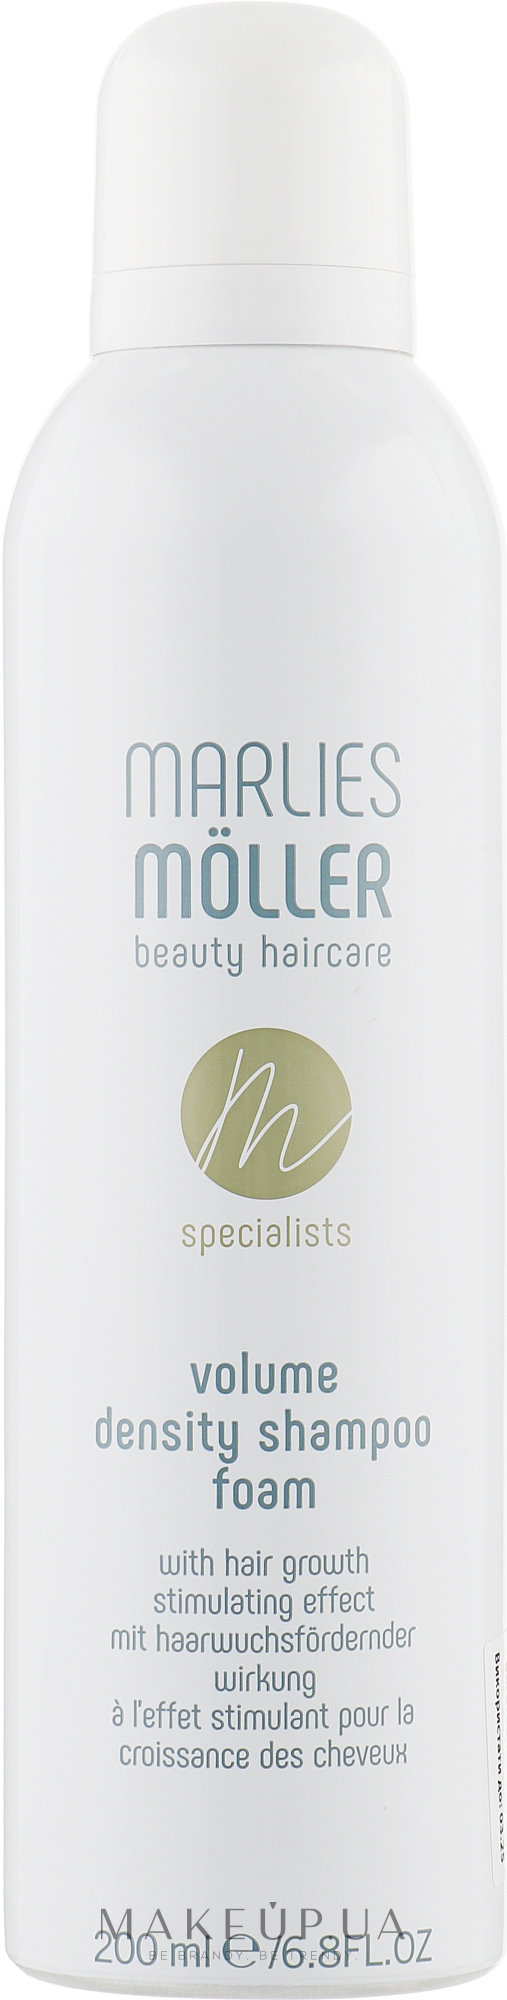 Шампунь-піна для стимуляції росту й збільшення об'єму волосся - Marlies Moller Volume Density Shampoo Foam — фото 200ml